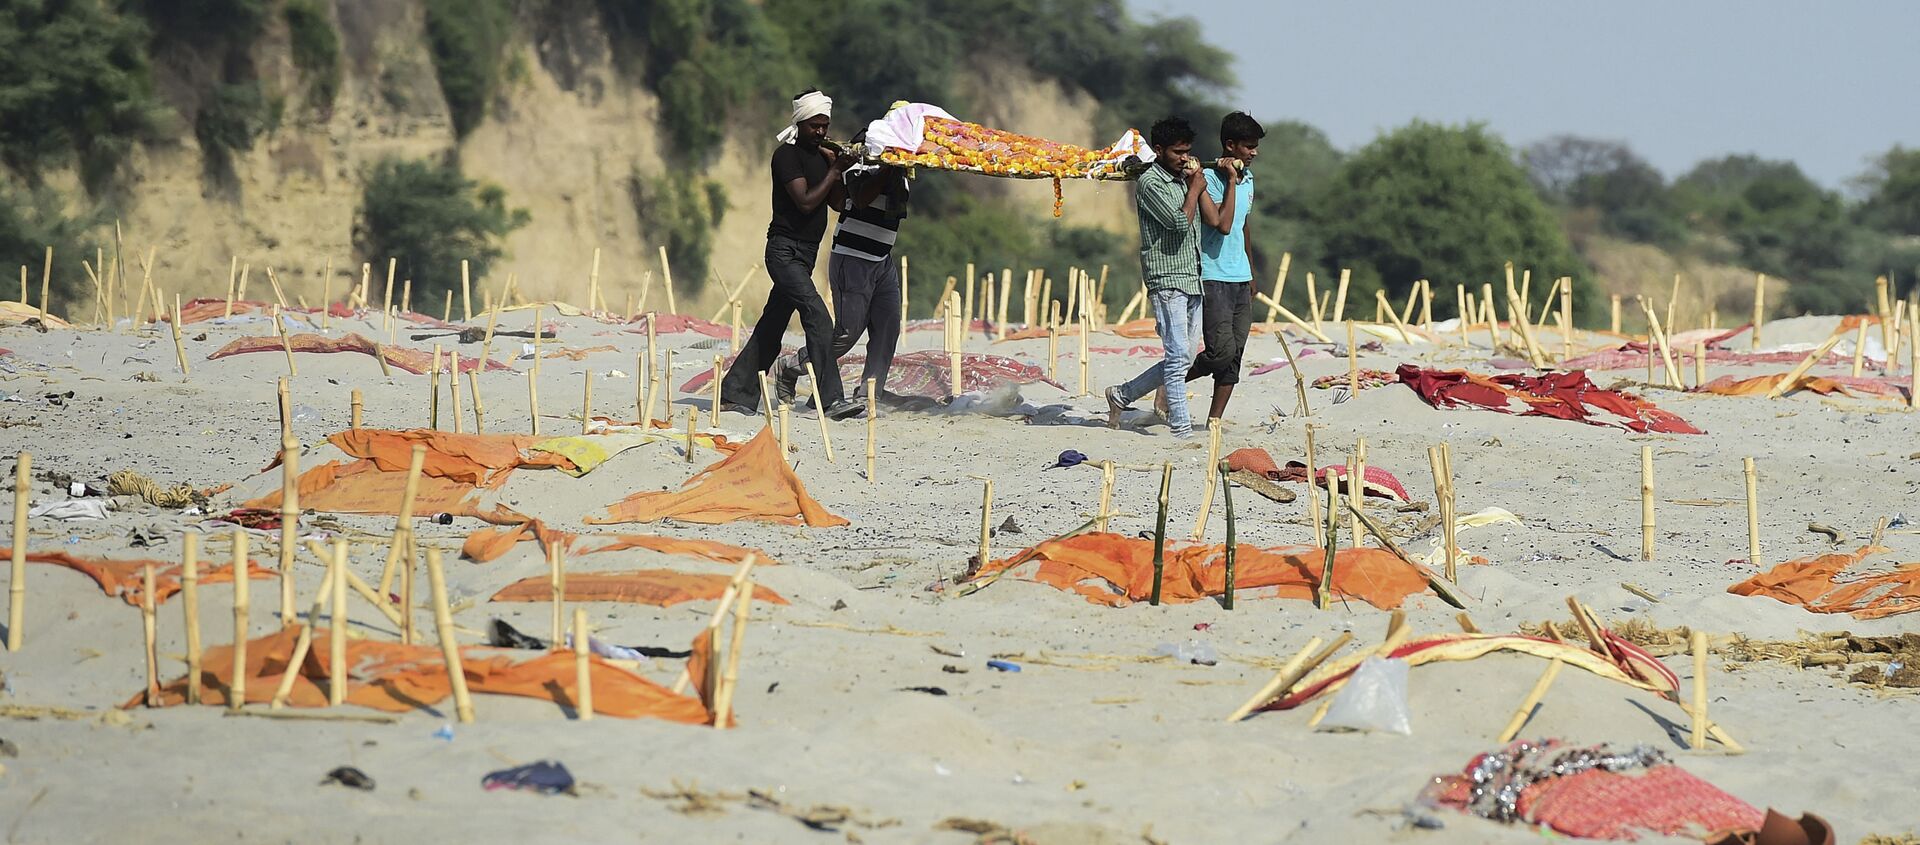 Hindistan'da sularından yüzlerce Kovid-19 kurbanının cansız bedenlerinin toplandığı Ganj Nehri'nin kıyılarındaki kumlarda üstünkörü kazılmış ve üzeri turuncu renkli kumaşlarla örtülmüş mezarlar da bulundu.  - Sputnik Türkiye, 1920, 16.05.2021